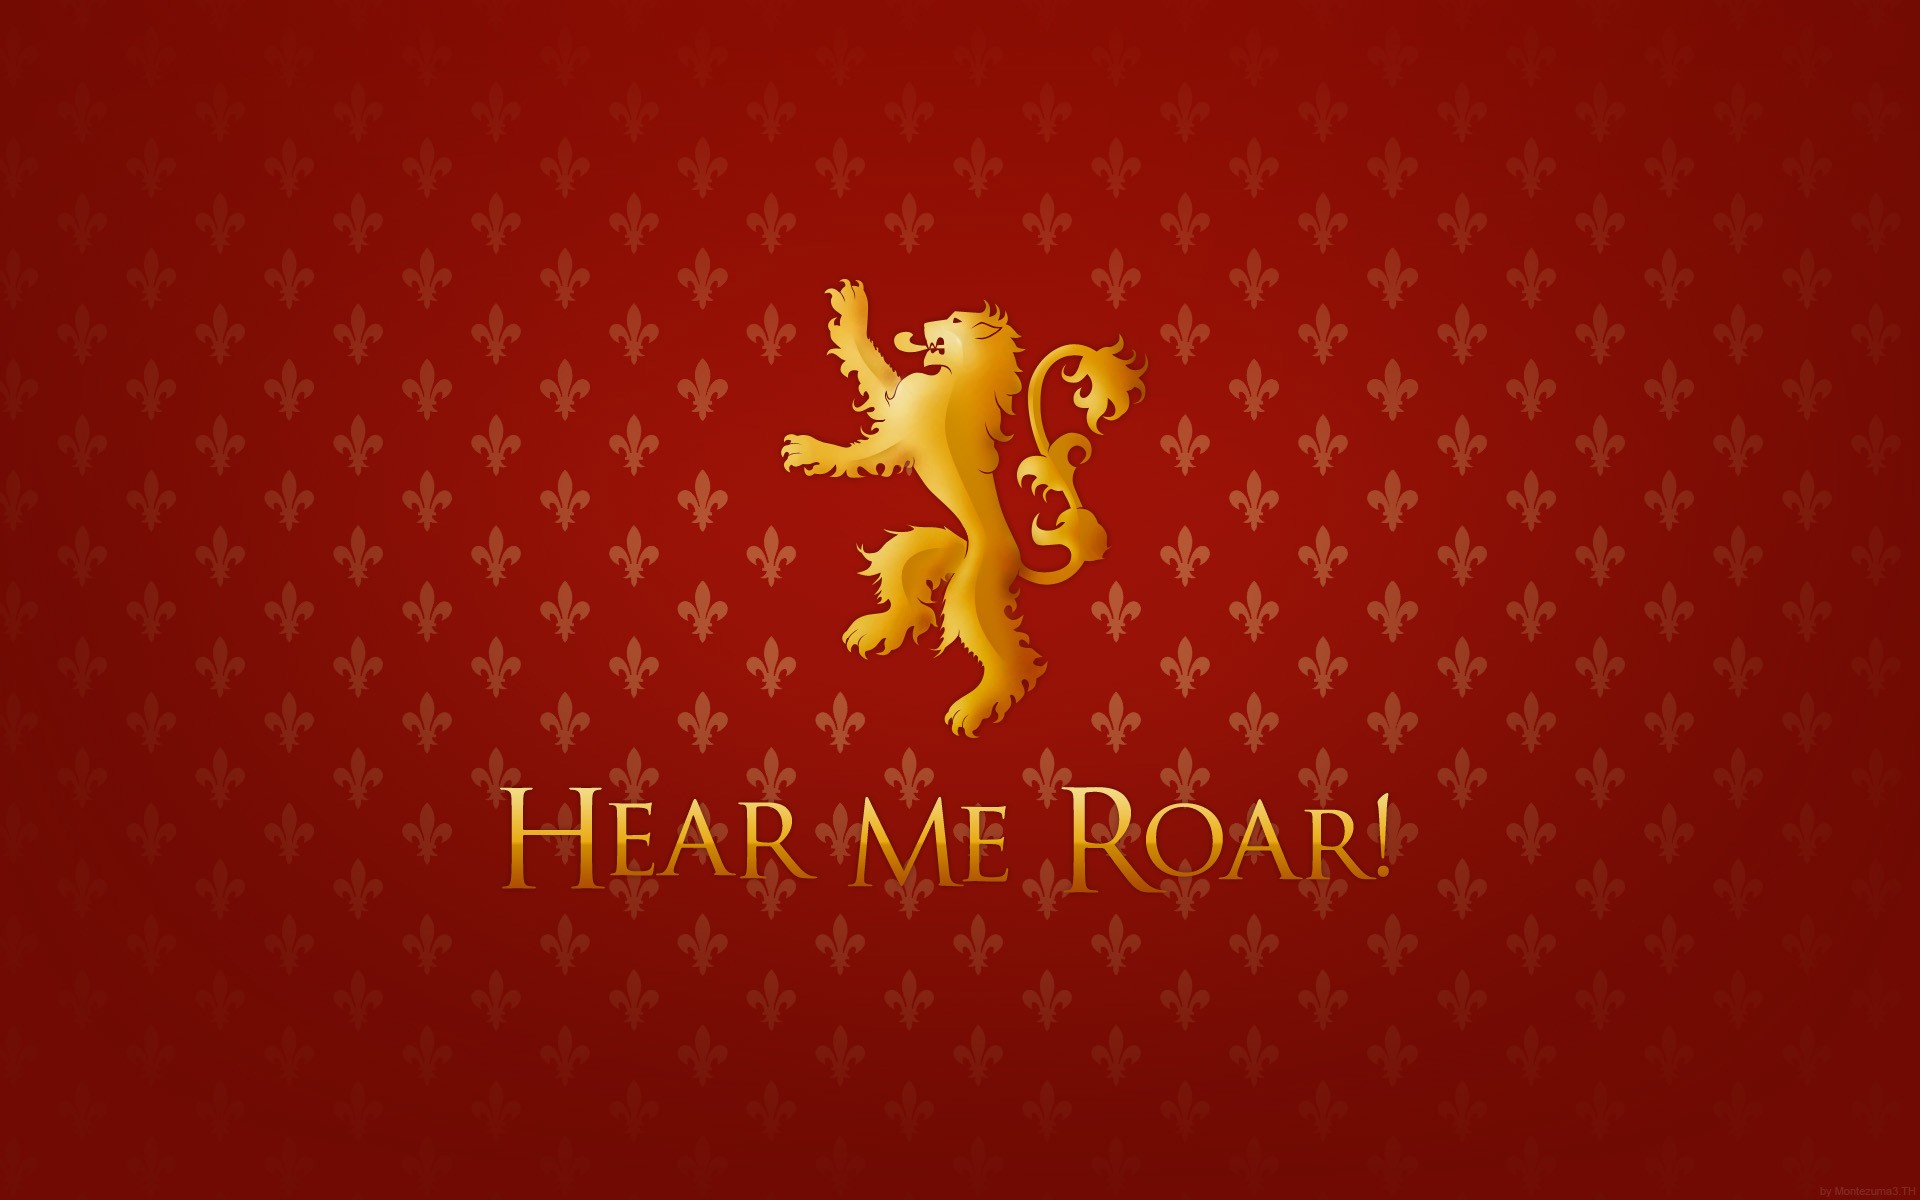 Download the Hear Me Roar Wallpaper, Hear Me Roar iPhone Wallpaper ...